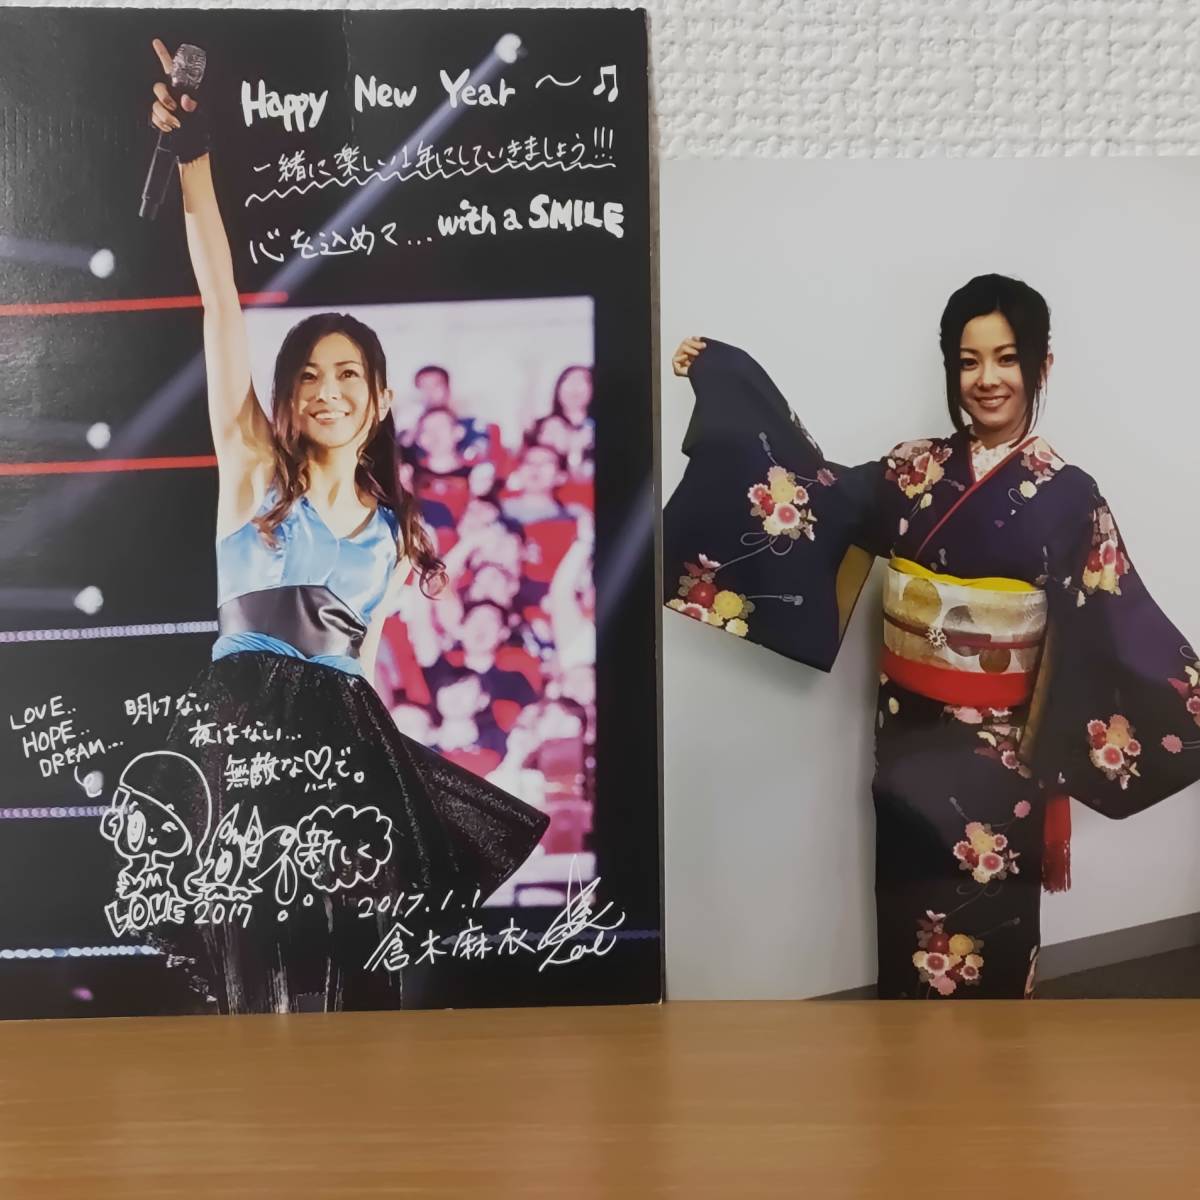 ¡Súper raro☆exclusivo de FC! Postal de Año Nuevo Tarjeta de felicitación Mai Kuraki Tarjeta de Año Nuevo 2016-2017 Postal Boletín Tarjeta de mensaje Bromuro de kimono Foto☆Mai-K, fila K, Mai Kuraki, otros